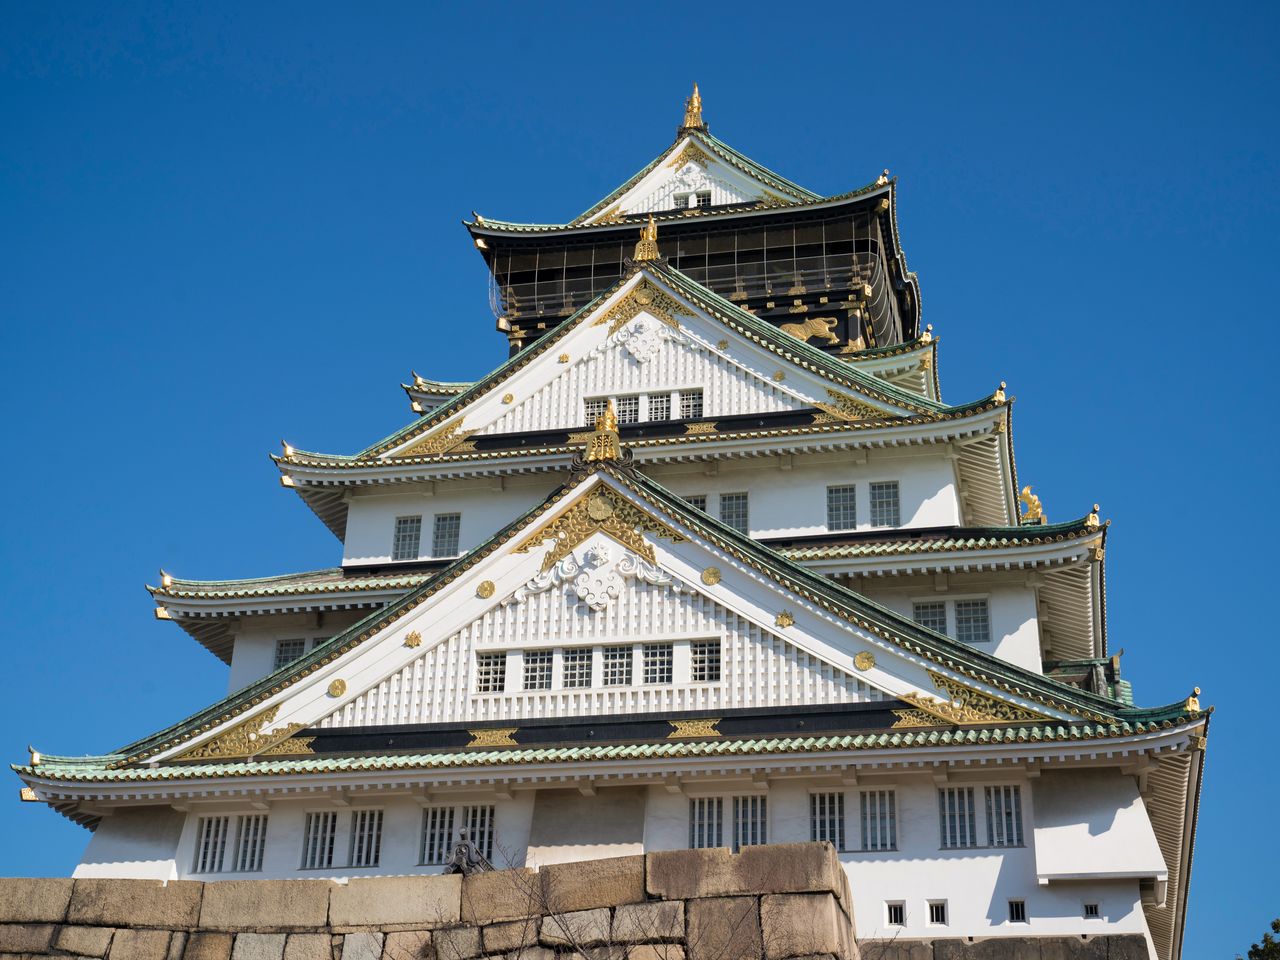 「大坂夏の陣図屏風」に描かれた城の意匠などを参考にしたという現在の天守閣